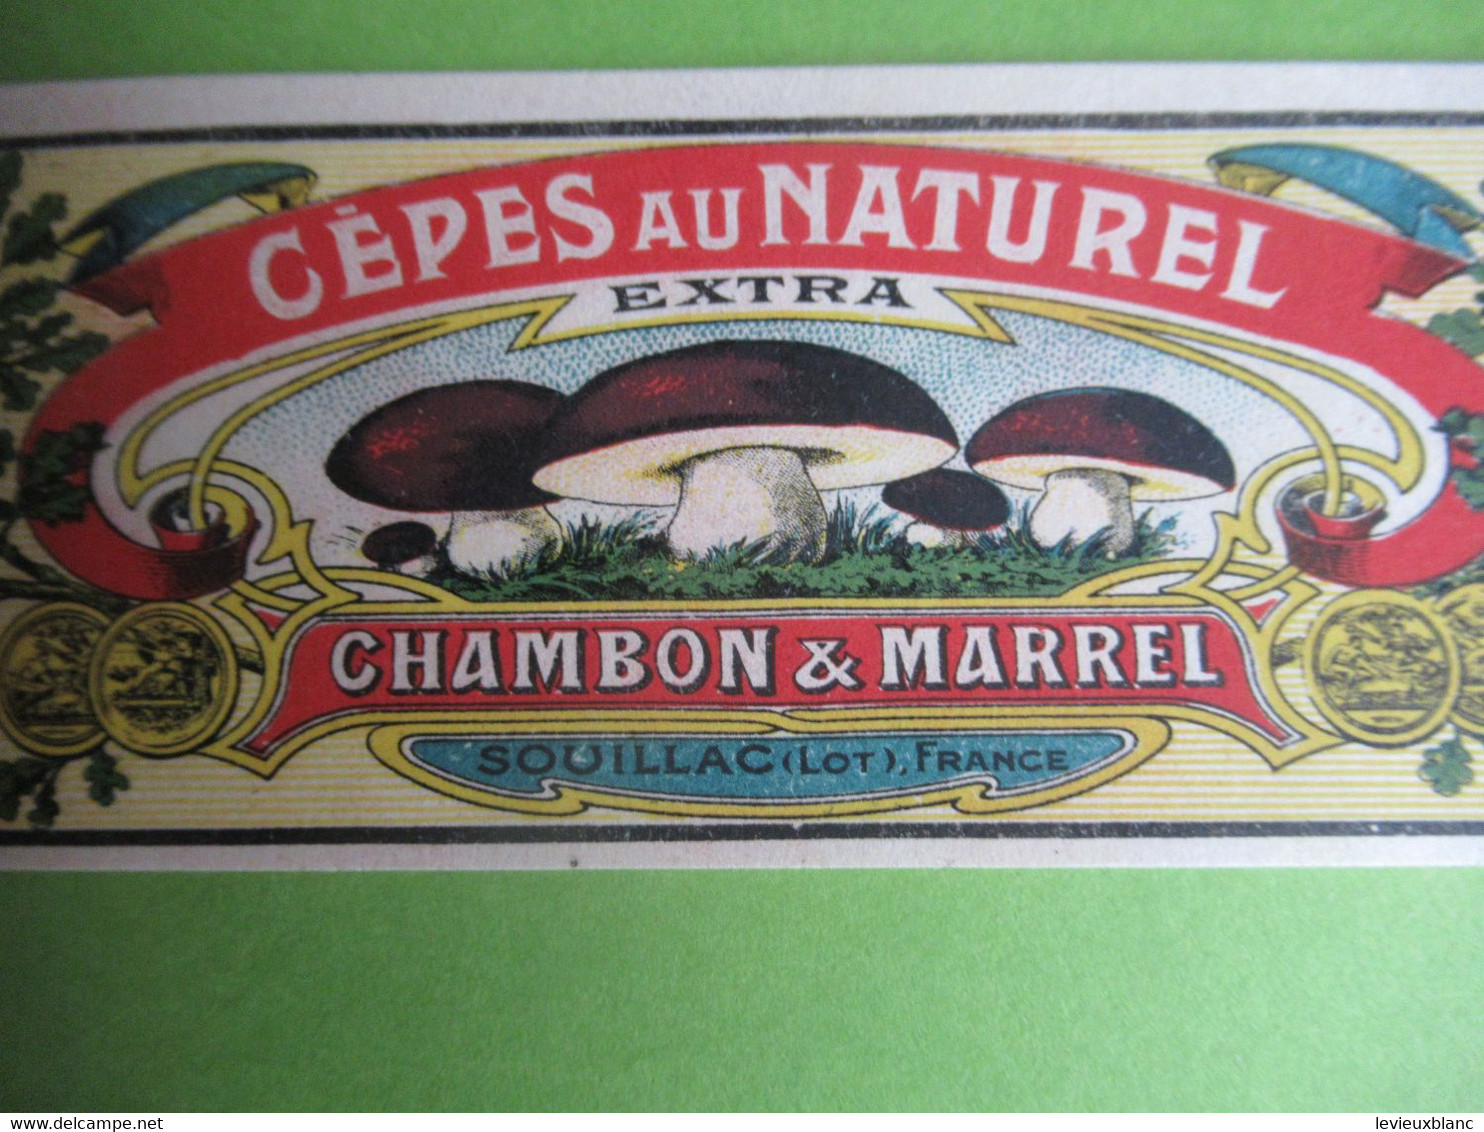 Etiquette Conserve/Cèpes Au Naturel /CHAMBON & MARREL/SOUILLAC( Lot ) Production JII/Ronteix Périgueux Début XX  ETIQ186 - Fruits Et Légumes